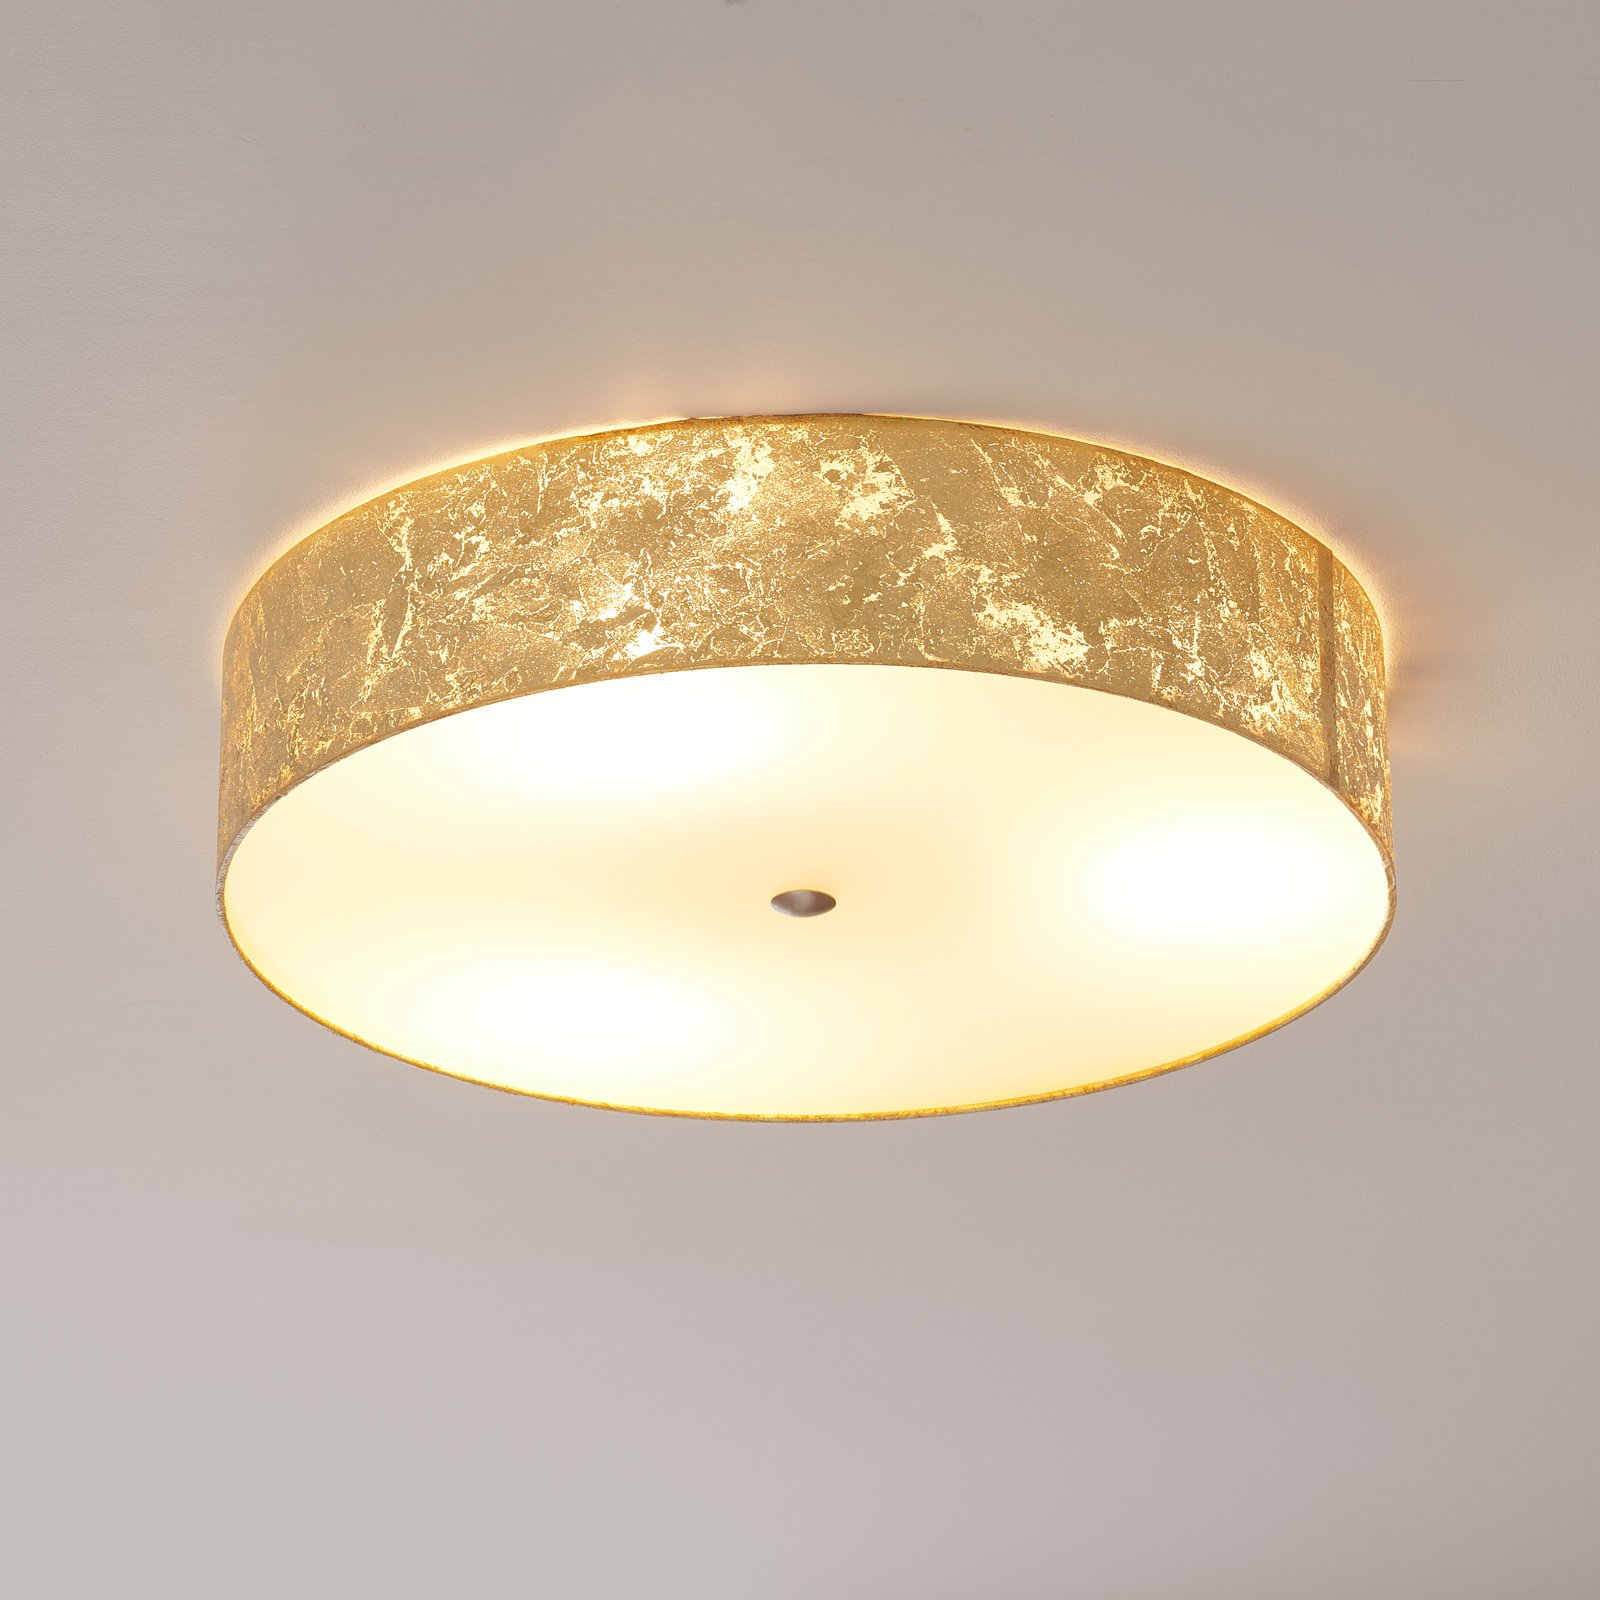 Lampa sufitowa LED ALEA LOOP ze złotem płatkowym